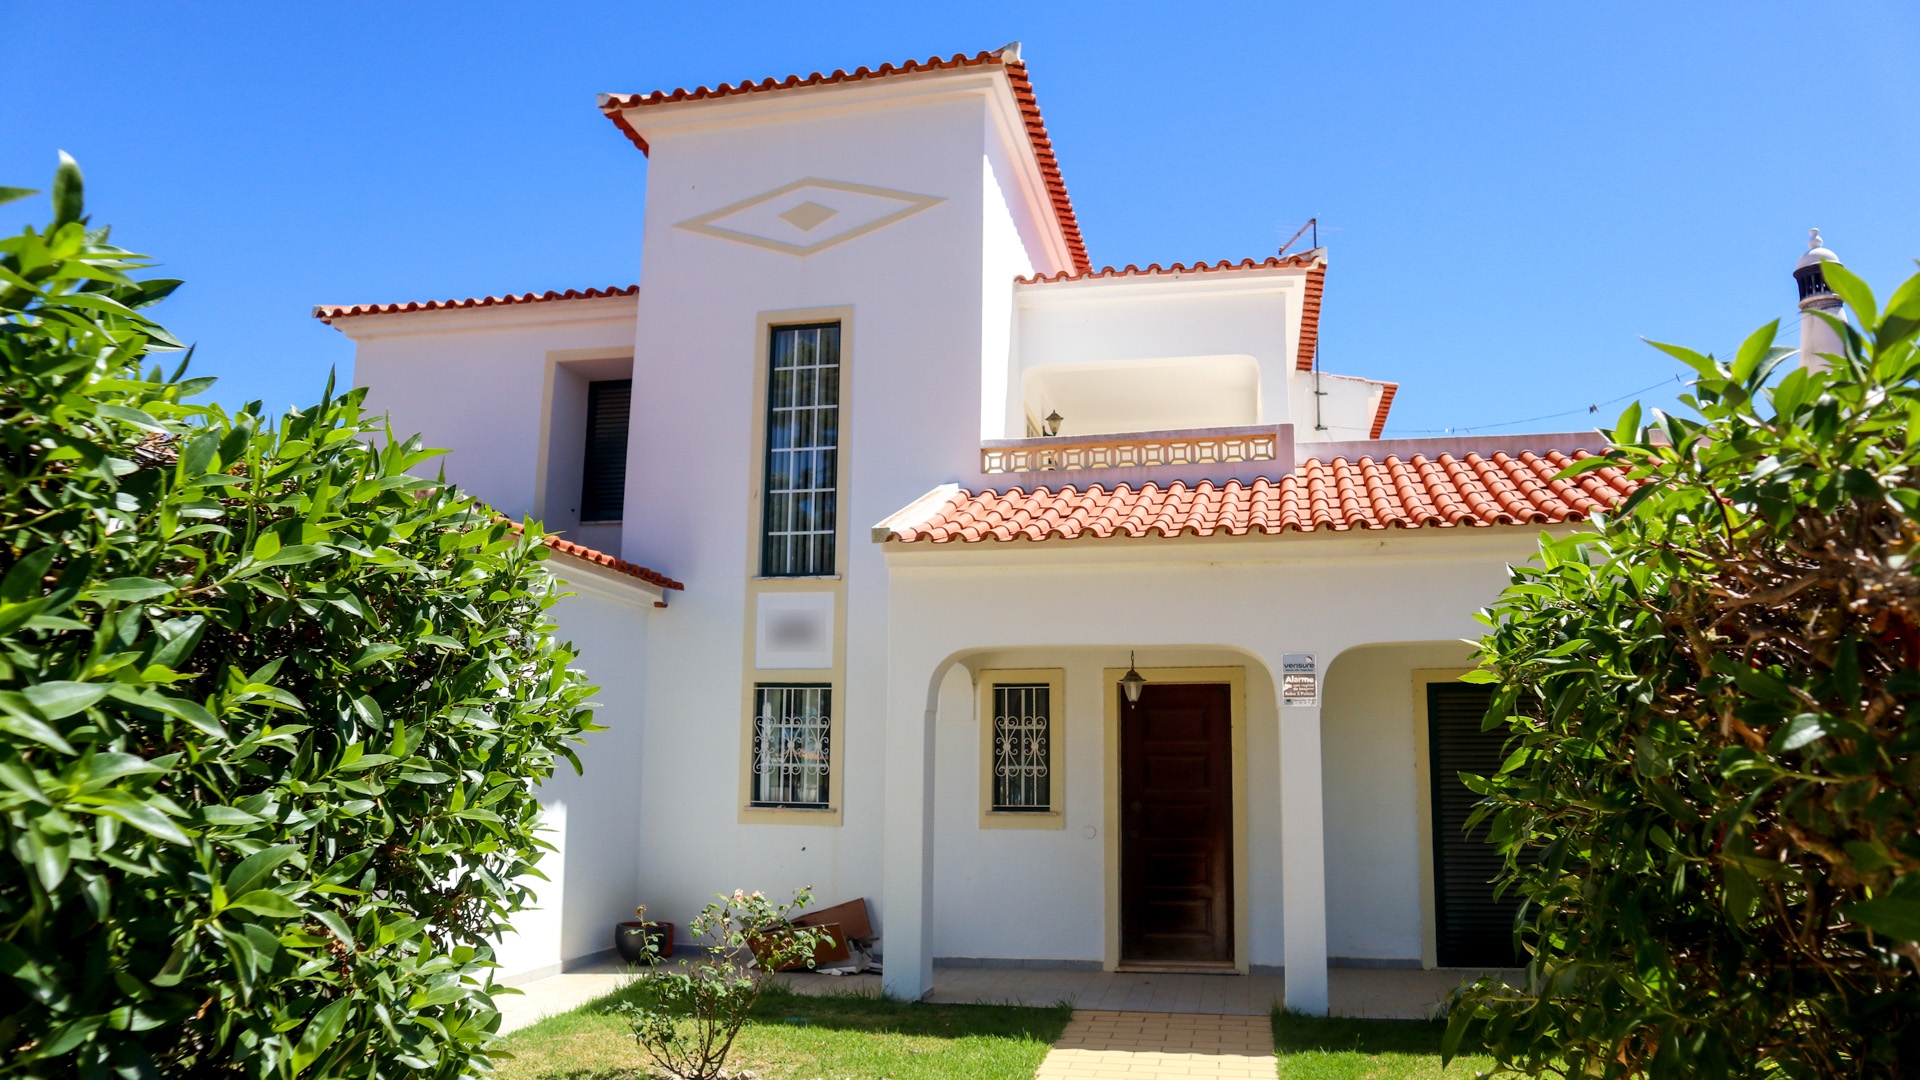 4 Schlafzimmer Villa mit Pool in Albufeira | VMPF1688 Diese Villa mit 4 Schlafzimmern und 3 Badezimmern (1 En-Suite) ist zwar renovierungsbedürftig, befindet sich jedoch in der Nähe des berühmten Albufeira-Strip, nahe der Strände und inmitten eines der beliebtesten touristischen-Hotspots der Algarve. Diese Villa liegt trotzdem ruhig und weit genug entfernt und ist als eigenes Ferienhaus oder als Investition in die Vermietung perfekt geeignet.